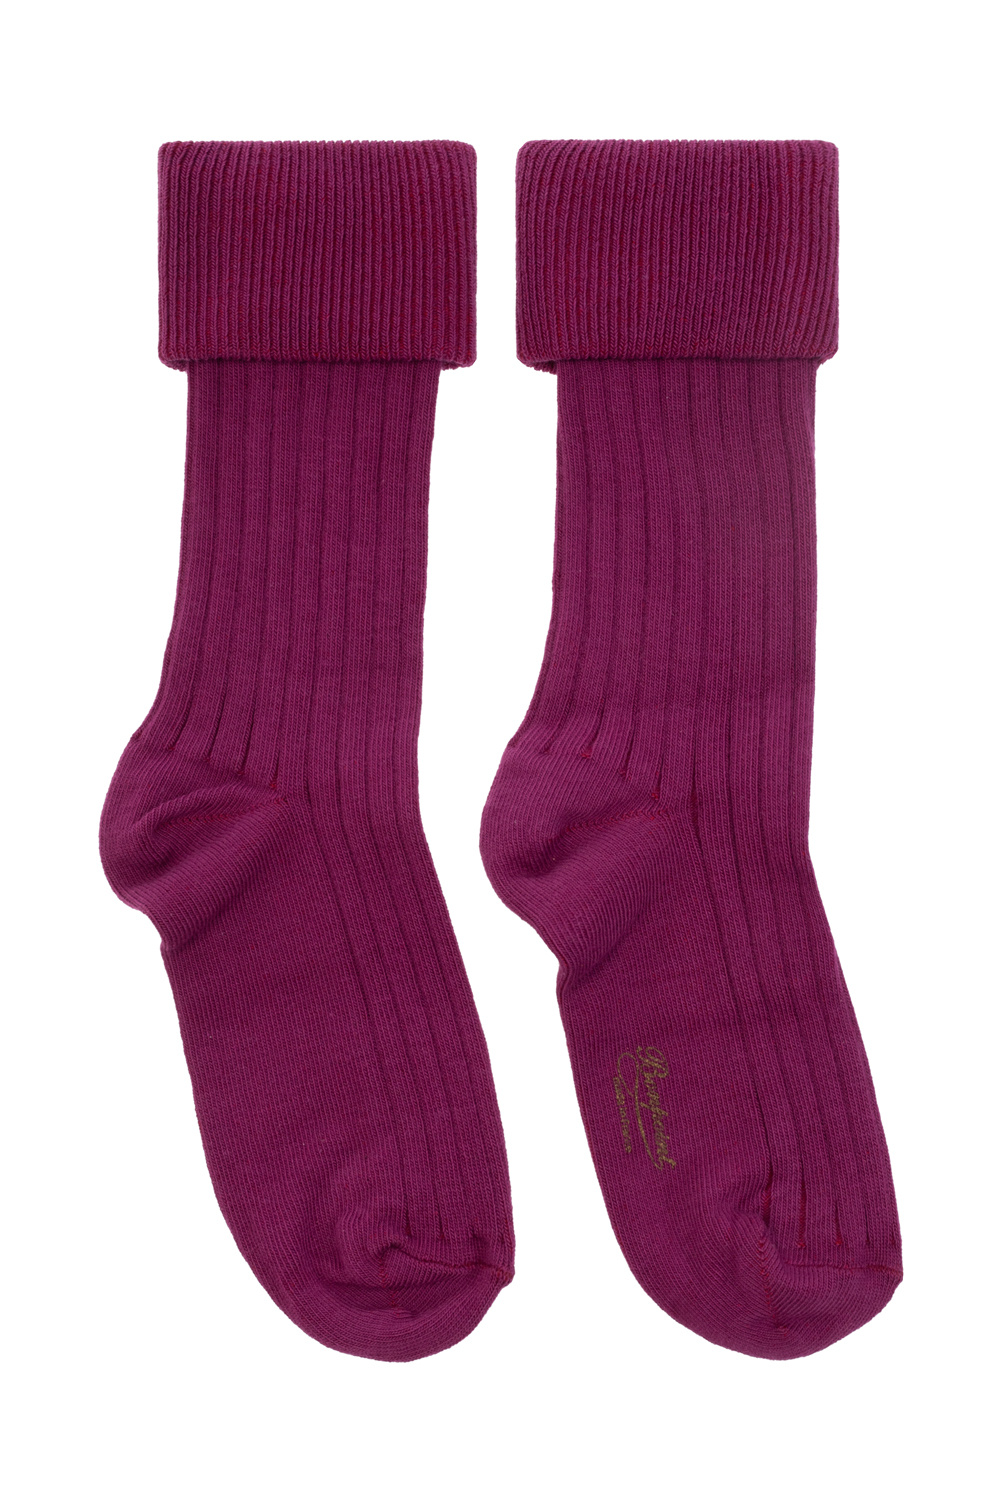 Bonpoint  Ribbed socks